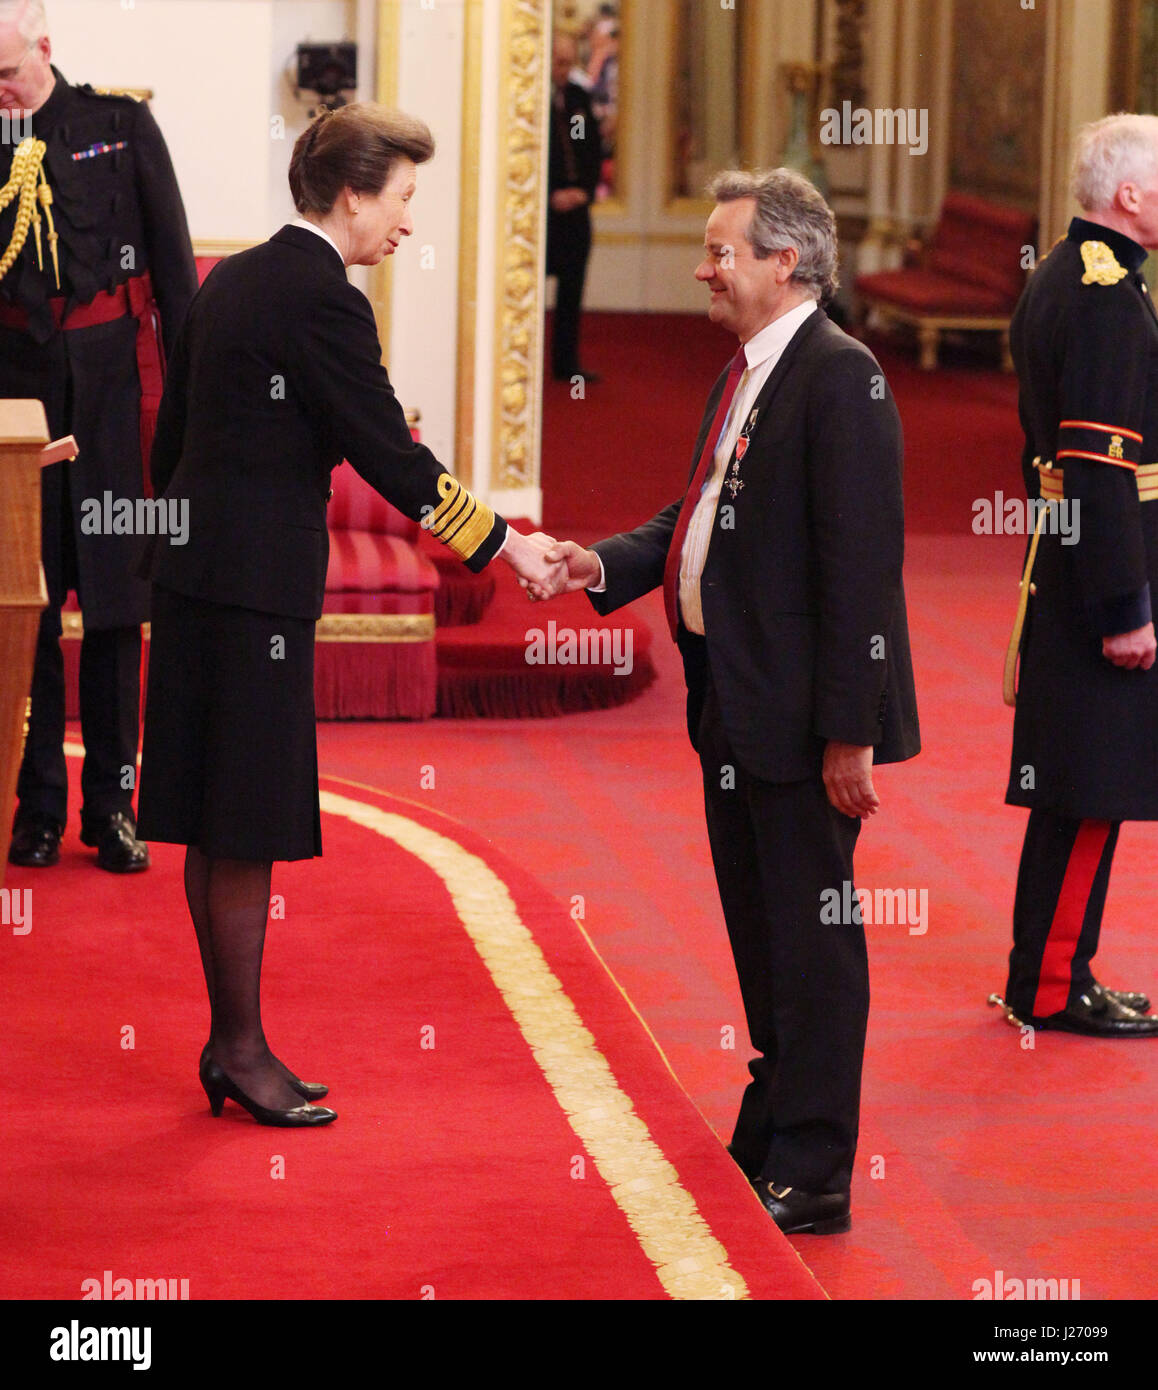 Herr Mark Hix aus London erfolgt durch die Princess Royal, im Rahmen einer Investitur Zeremonie am Buckingham Palace, London MBE (Member of the Order of the British Empire). Stockfoto